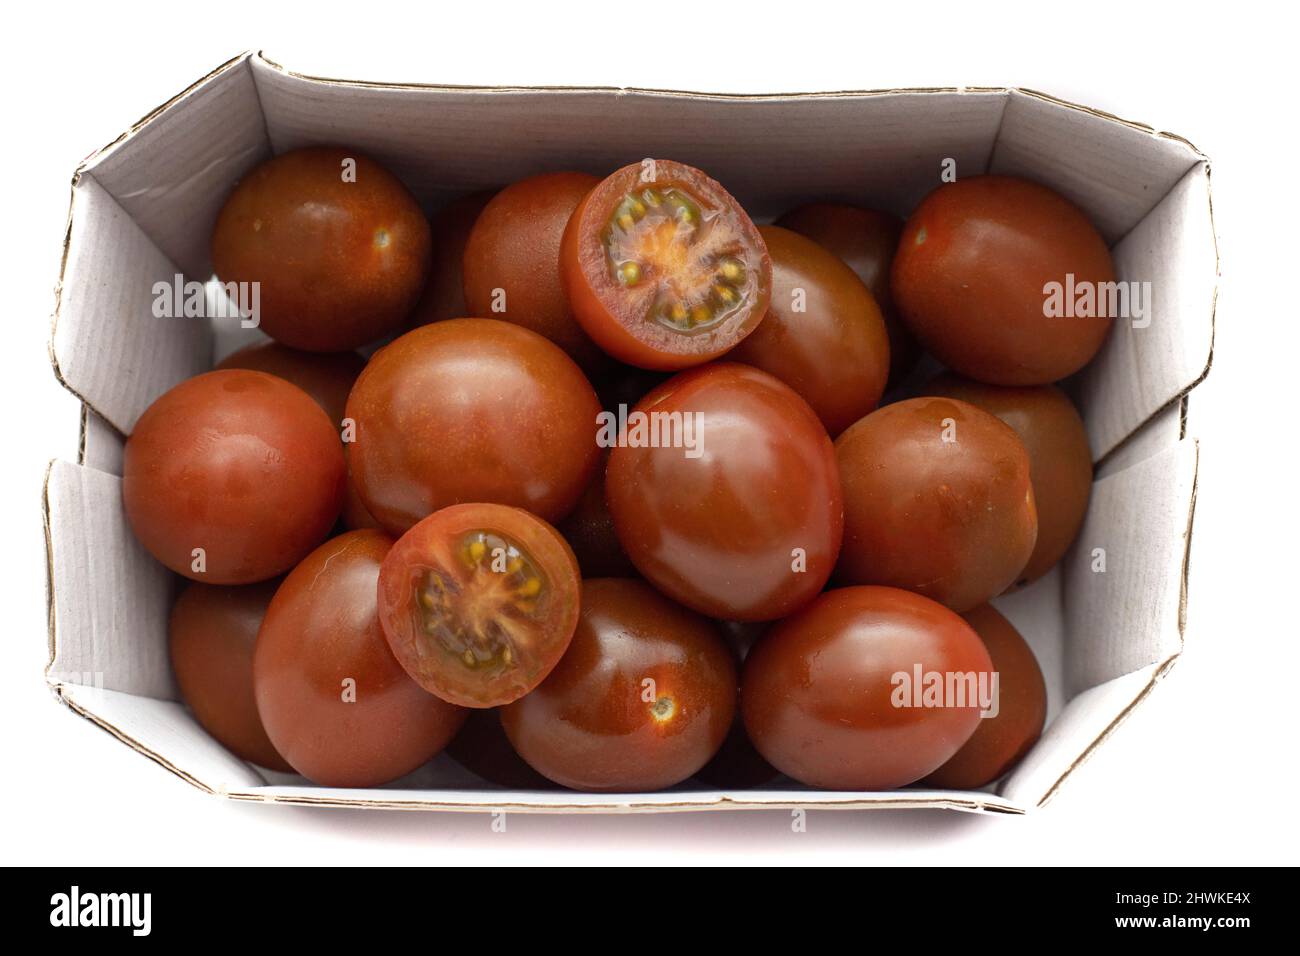 Un carton de tomates cerises, la variété mini kumato. Isolé sur fond blanc. Banque D'Images